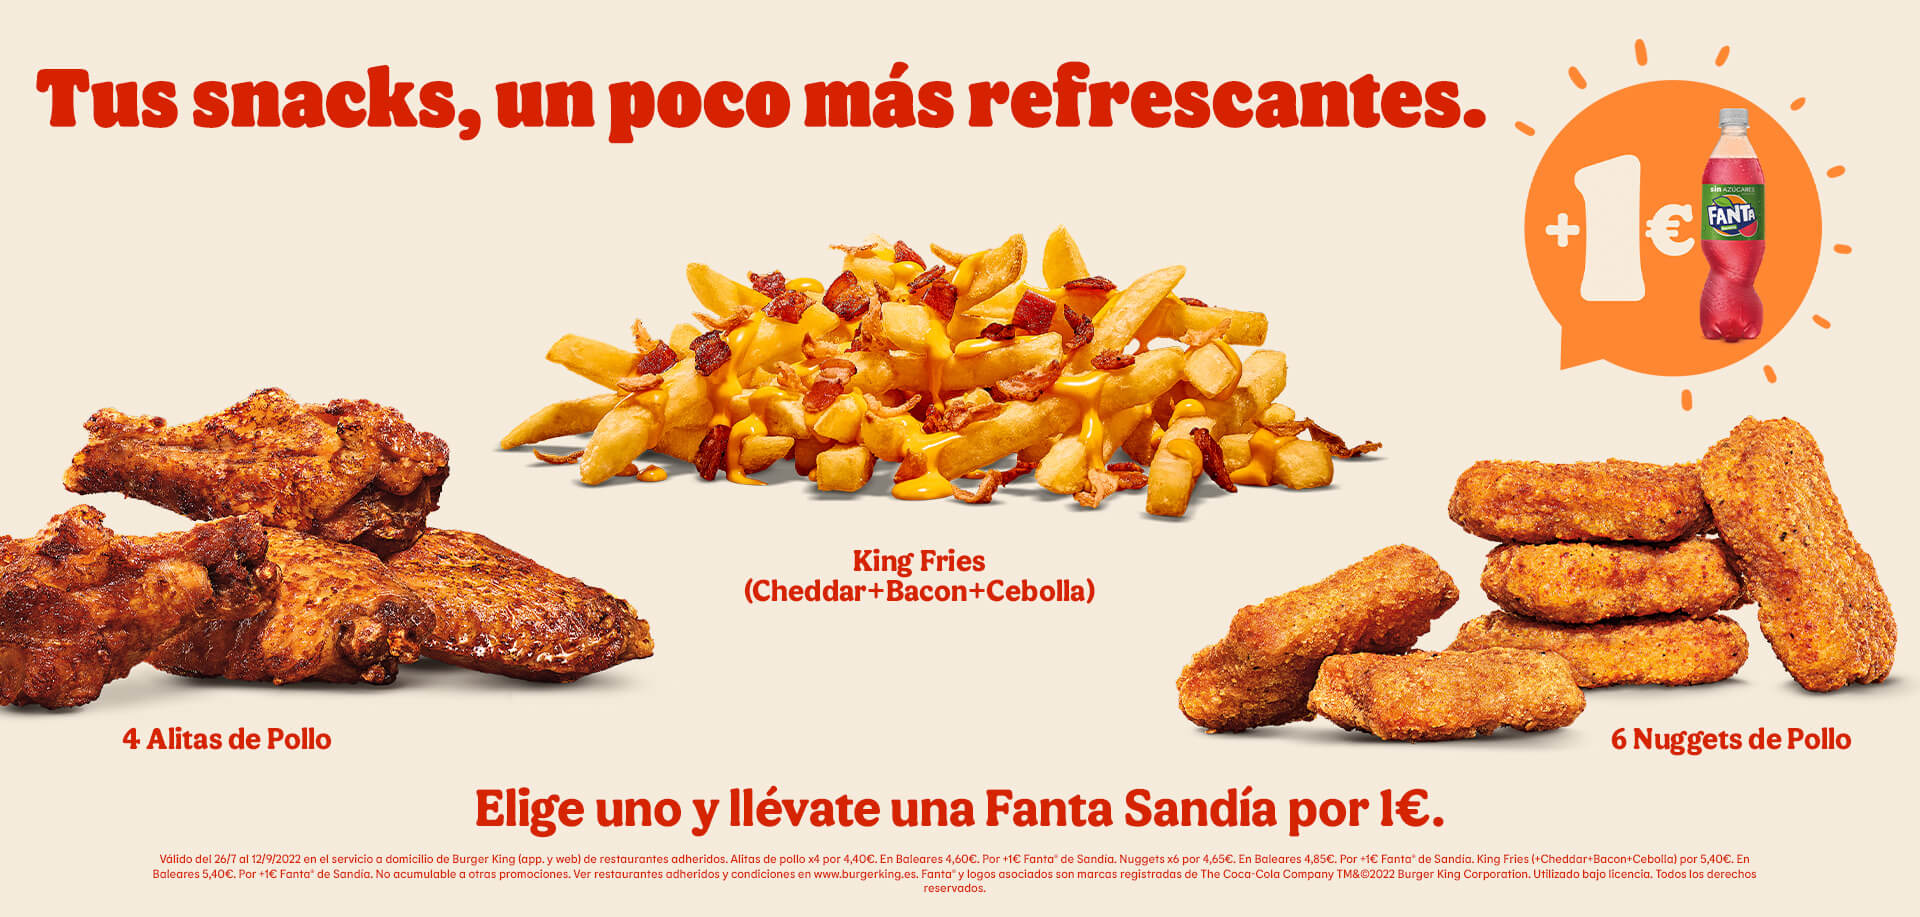 Fanta de Sandía por 1€ más la compra de 4 alitas de pollo (4,40€ o 4,60€), King Fries (Cheddar + Bacon + Cebolla) (5,40€ o 5,40€) o 6 nuggets de pollo (4,65€ o 4,85€) en pedidos en el servicio a domicilio de Burger King (app y web)